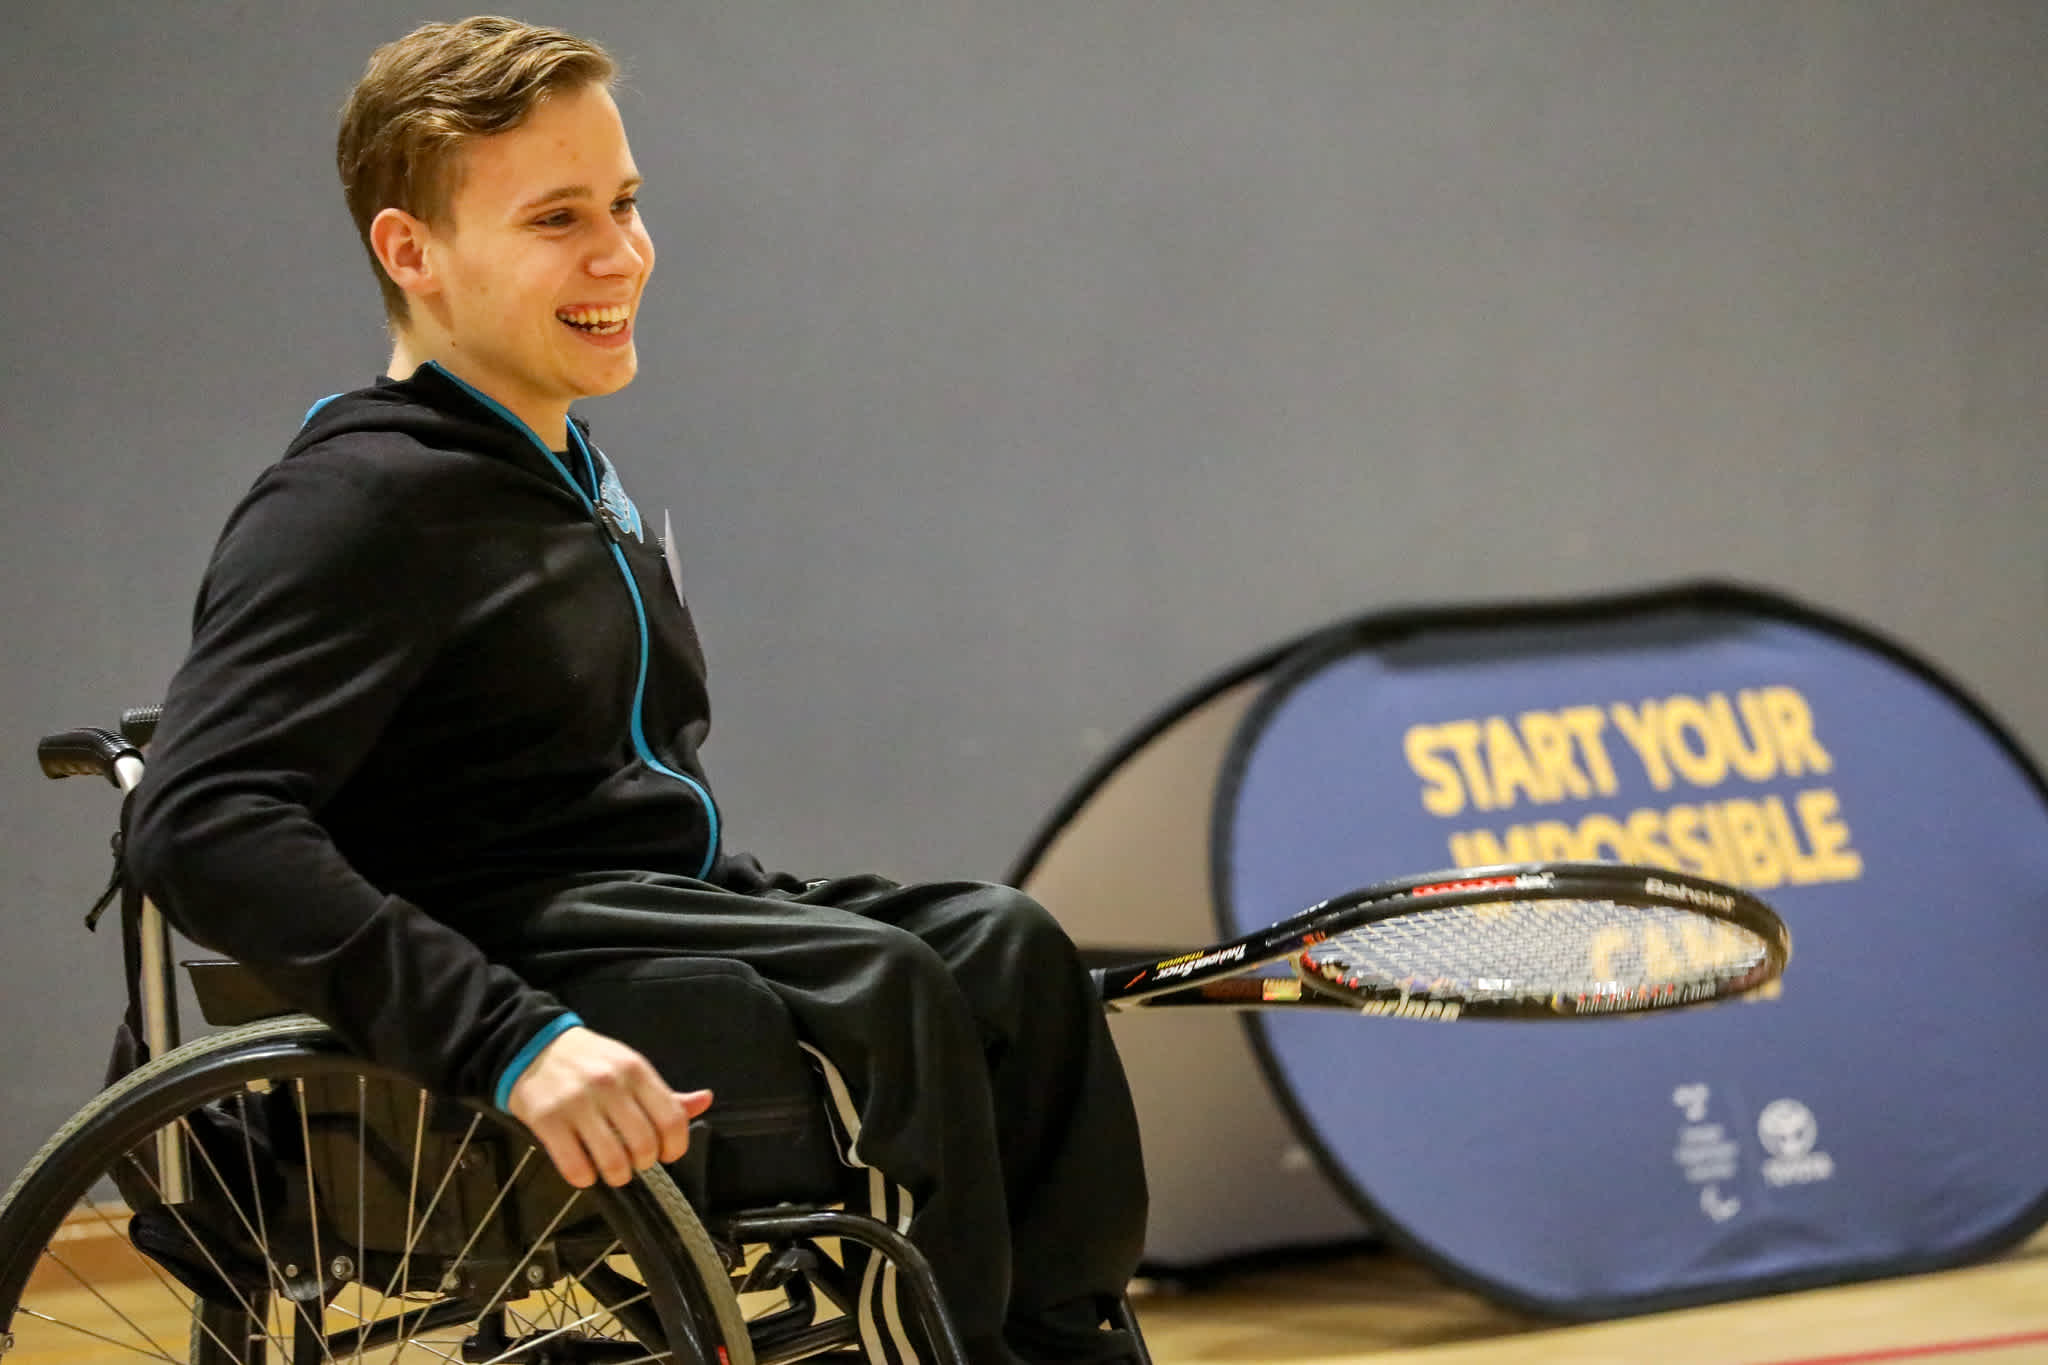 En kille i rullstol håller i ett tennisracket och ler mot sin motspelare